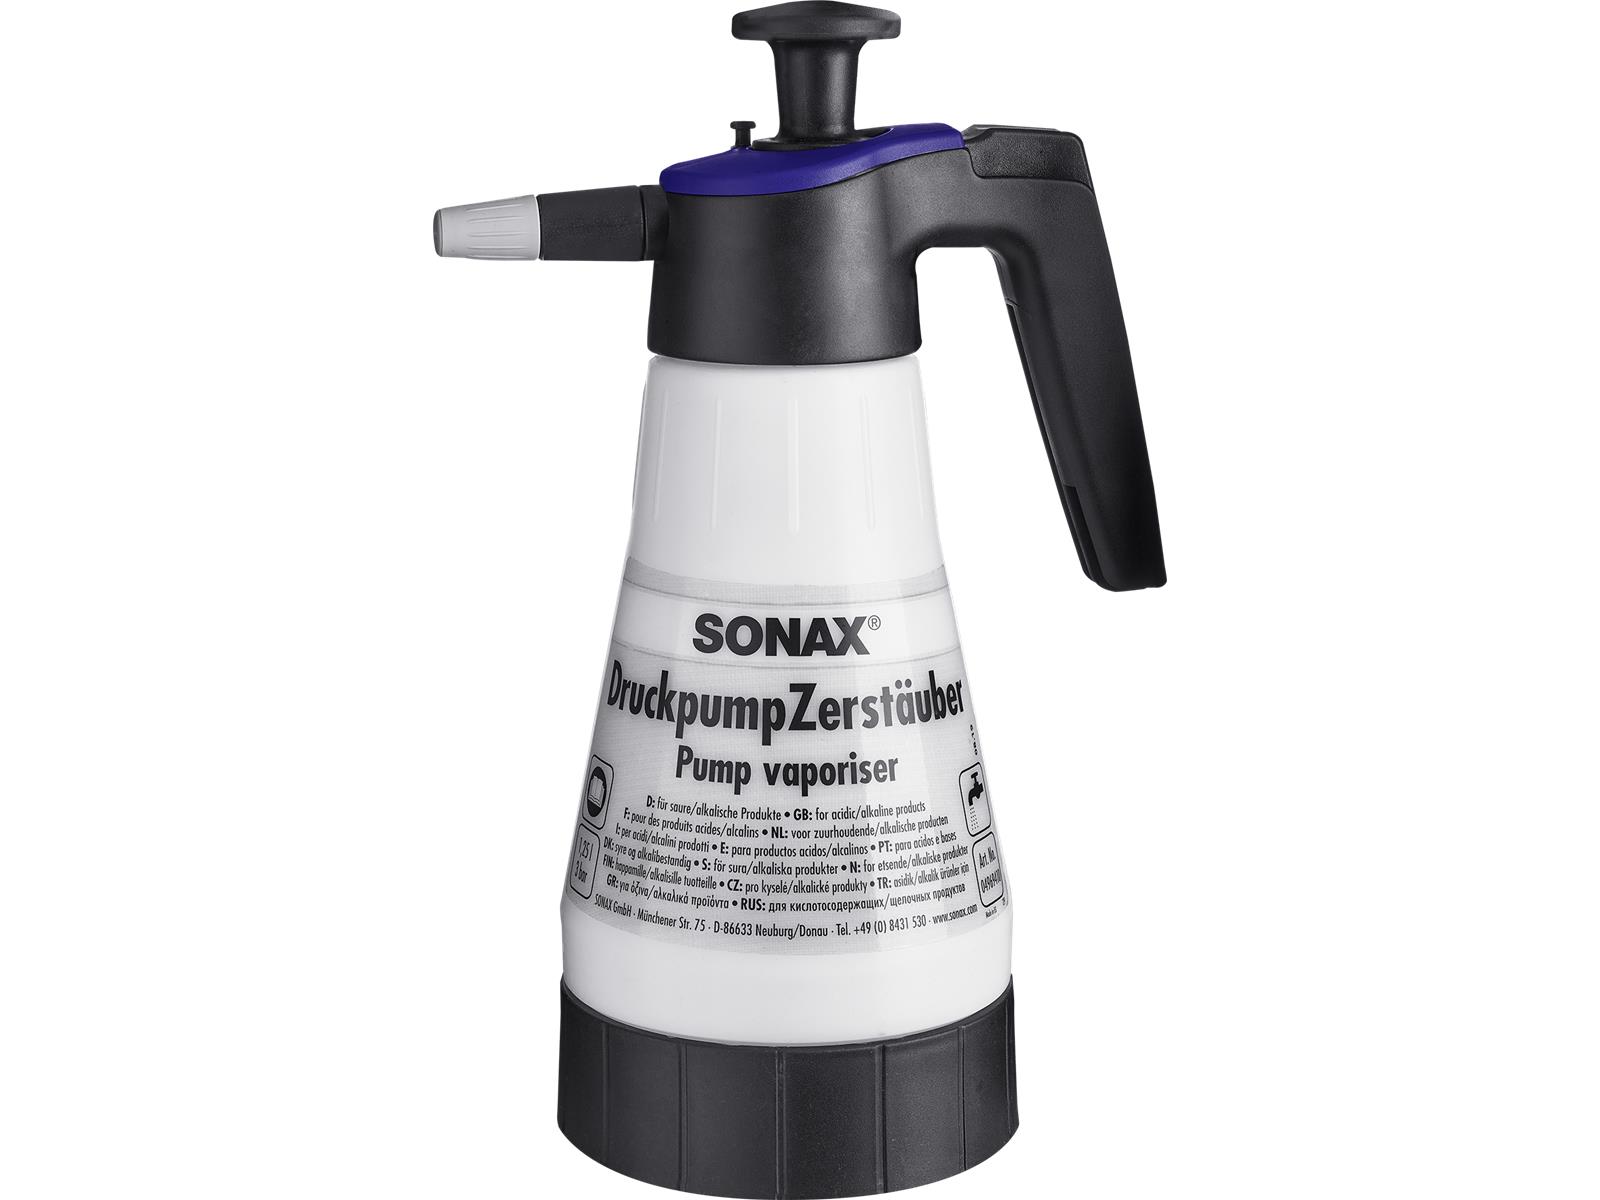 SONAX 04969410 DruckpumpZerstäuber für saure/alkalische Produkte 1 Stück